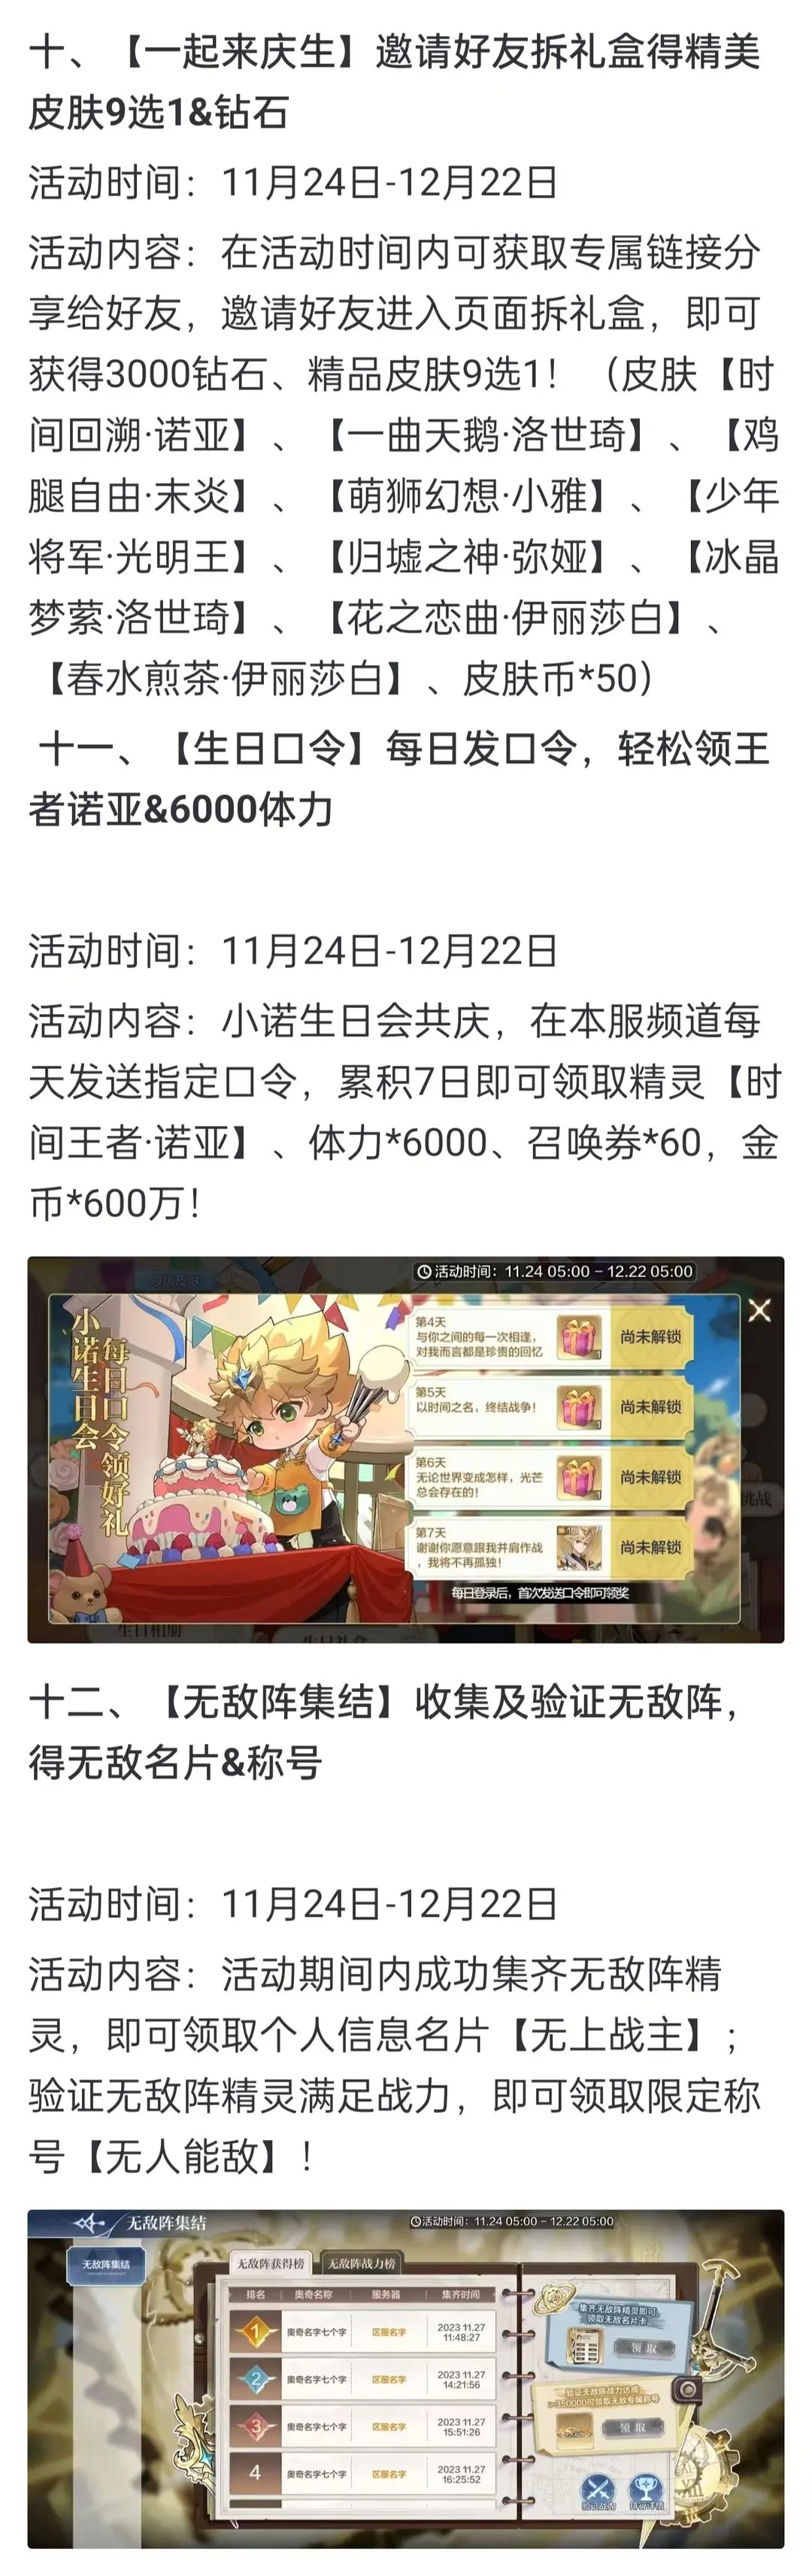 奥奇传说手游更新公告11月24日 奥奇传说手游小诺生日会开启图9